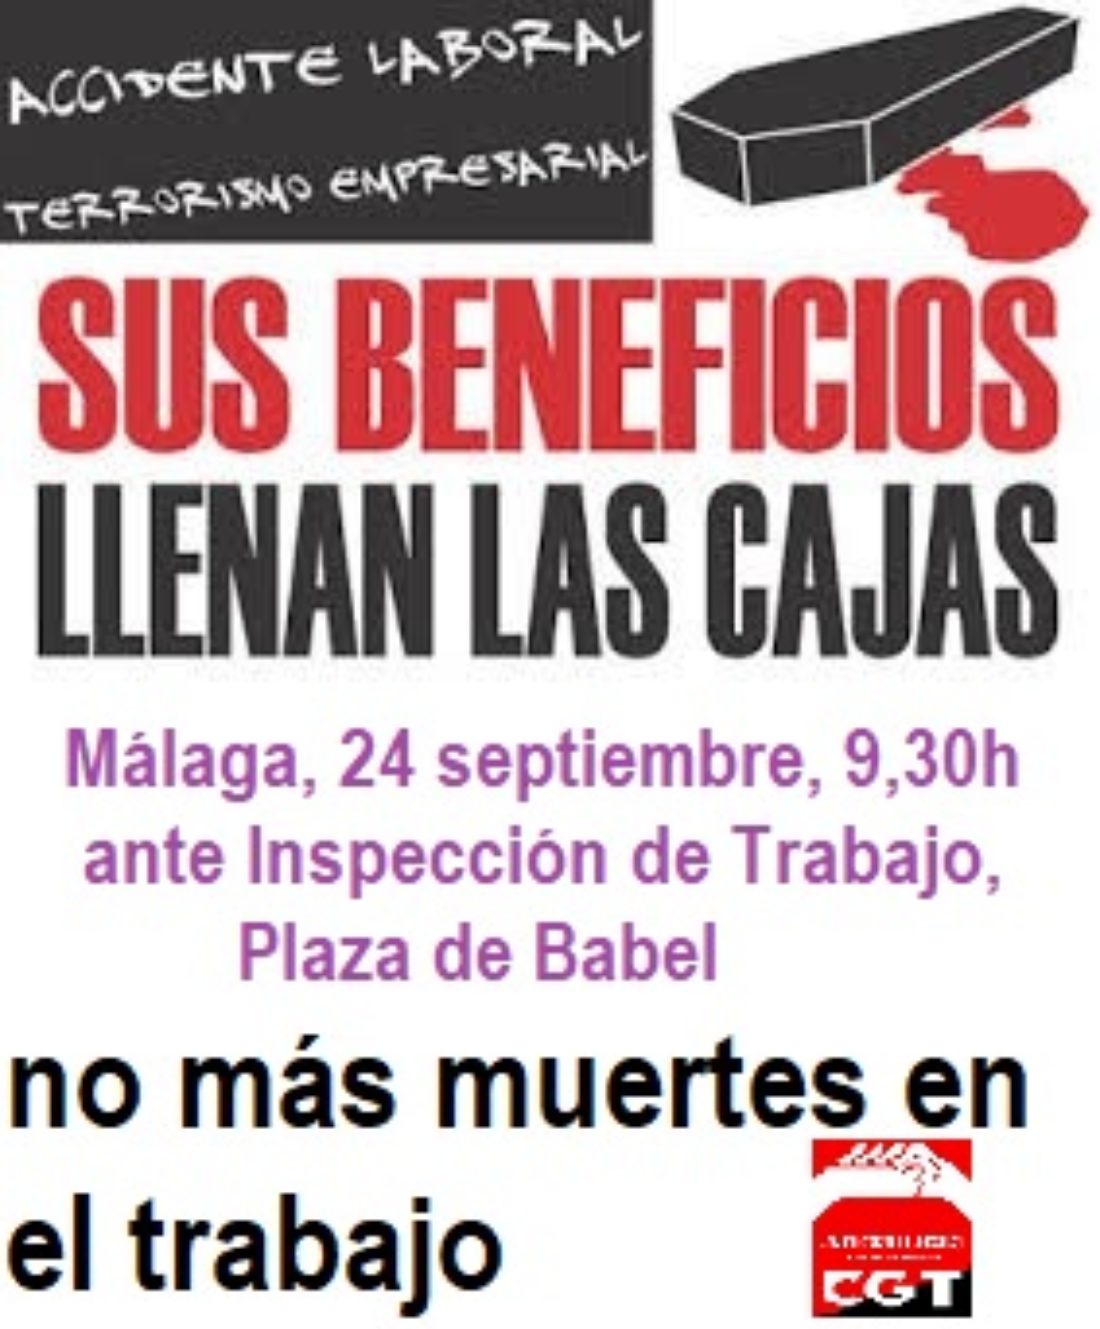 EEl viernes 24 de septiembre, jornada completa de reivindicaciones en Málaga